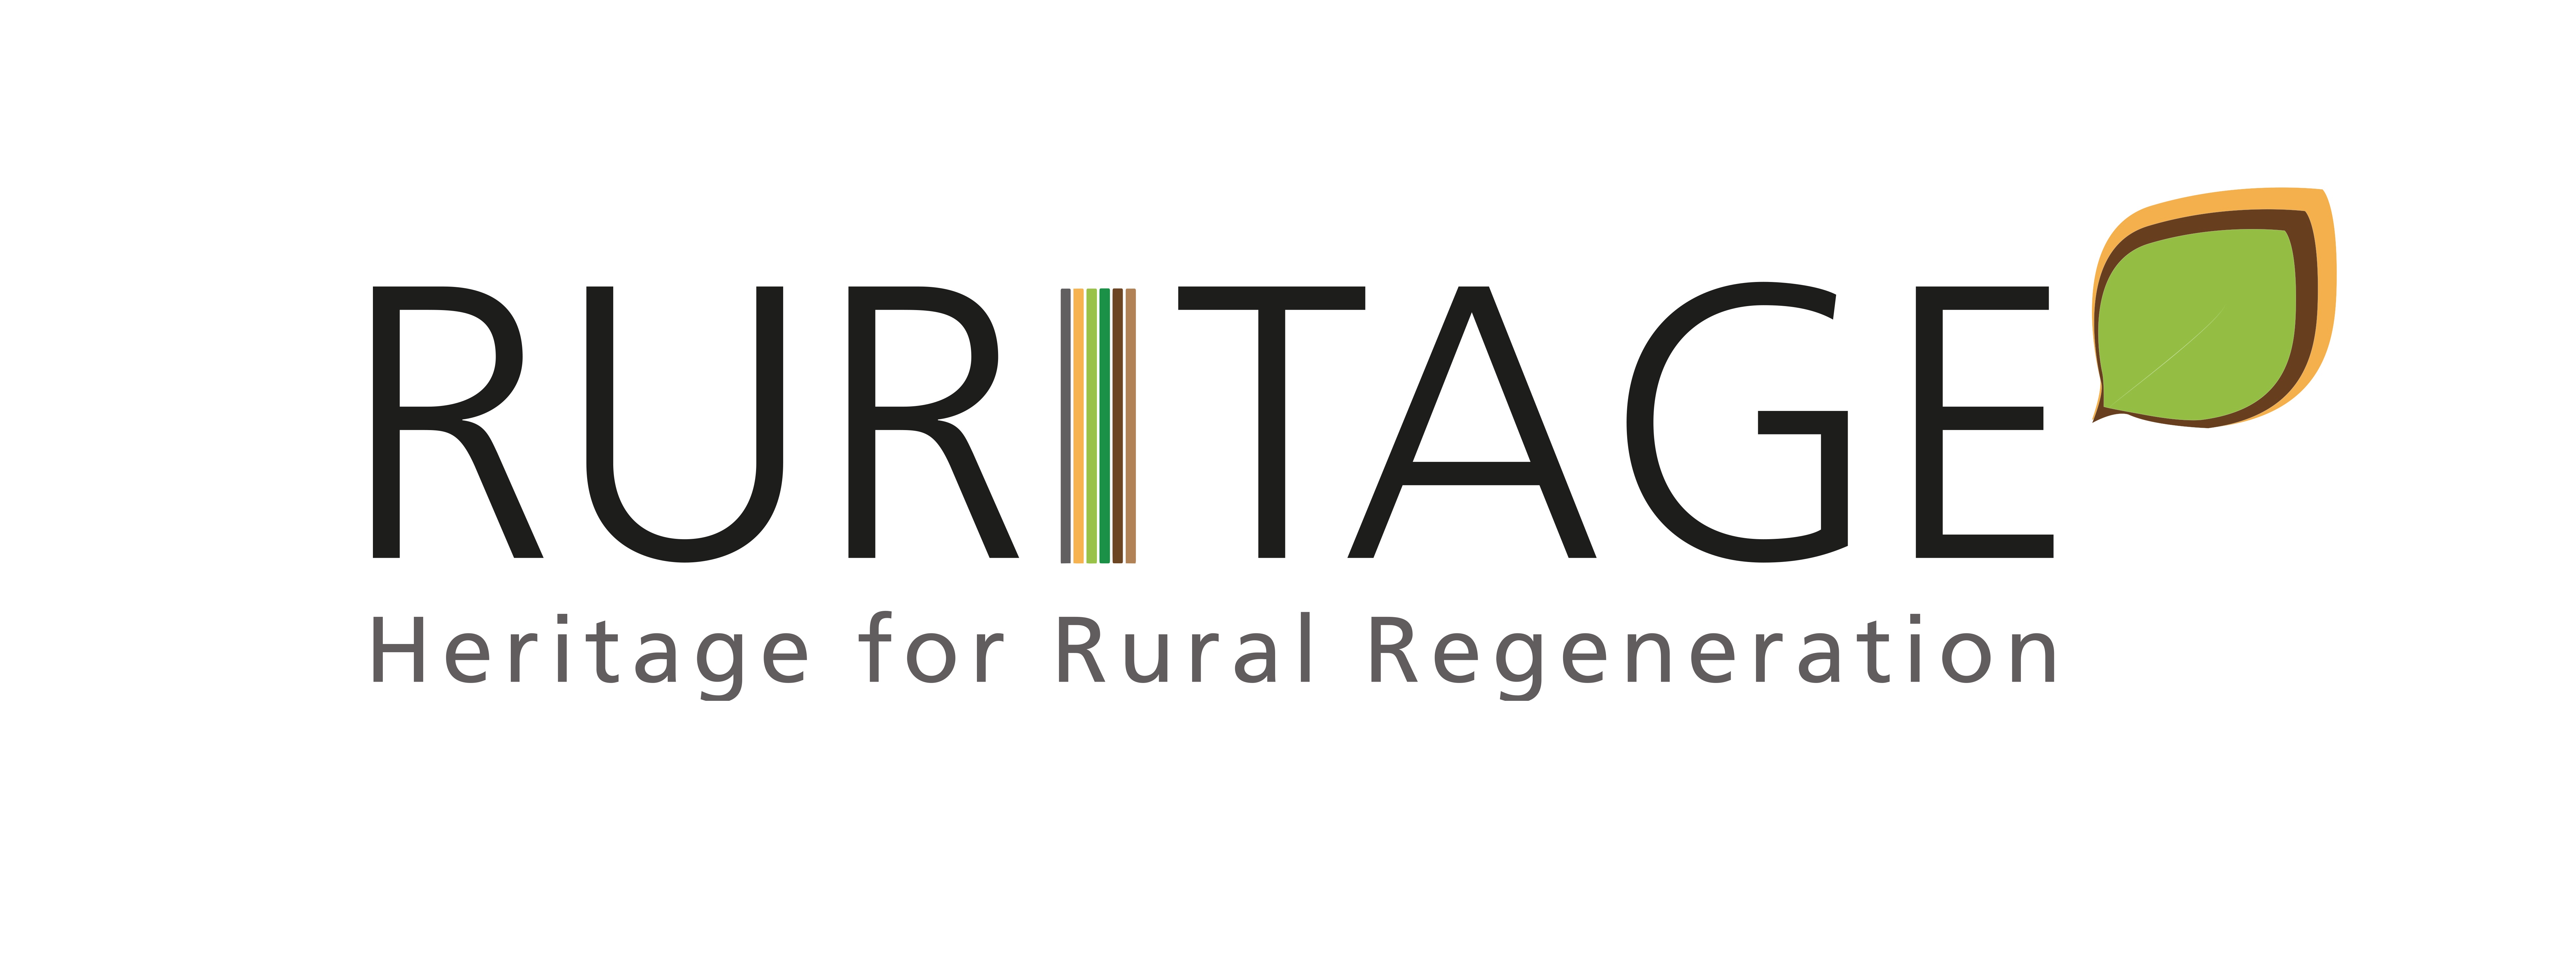 RURITAGE logo